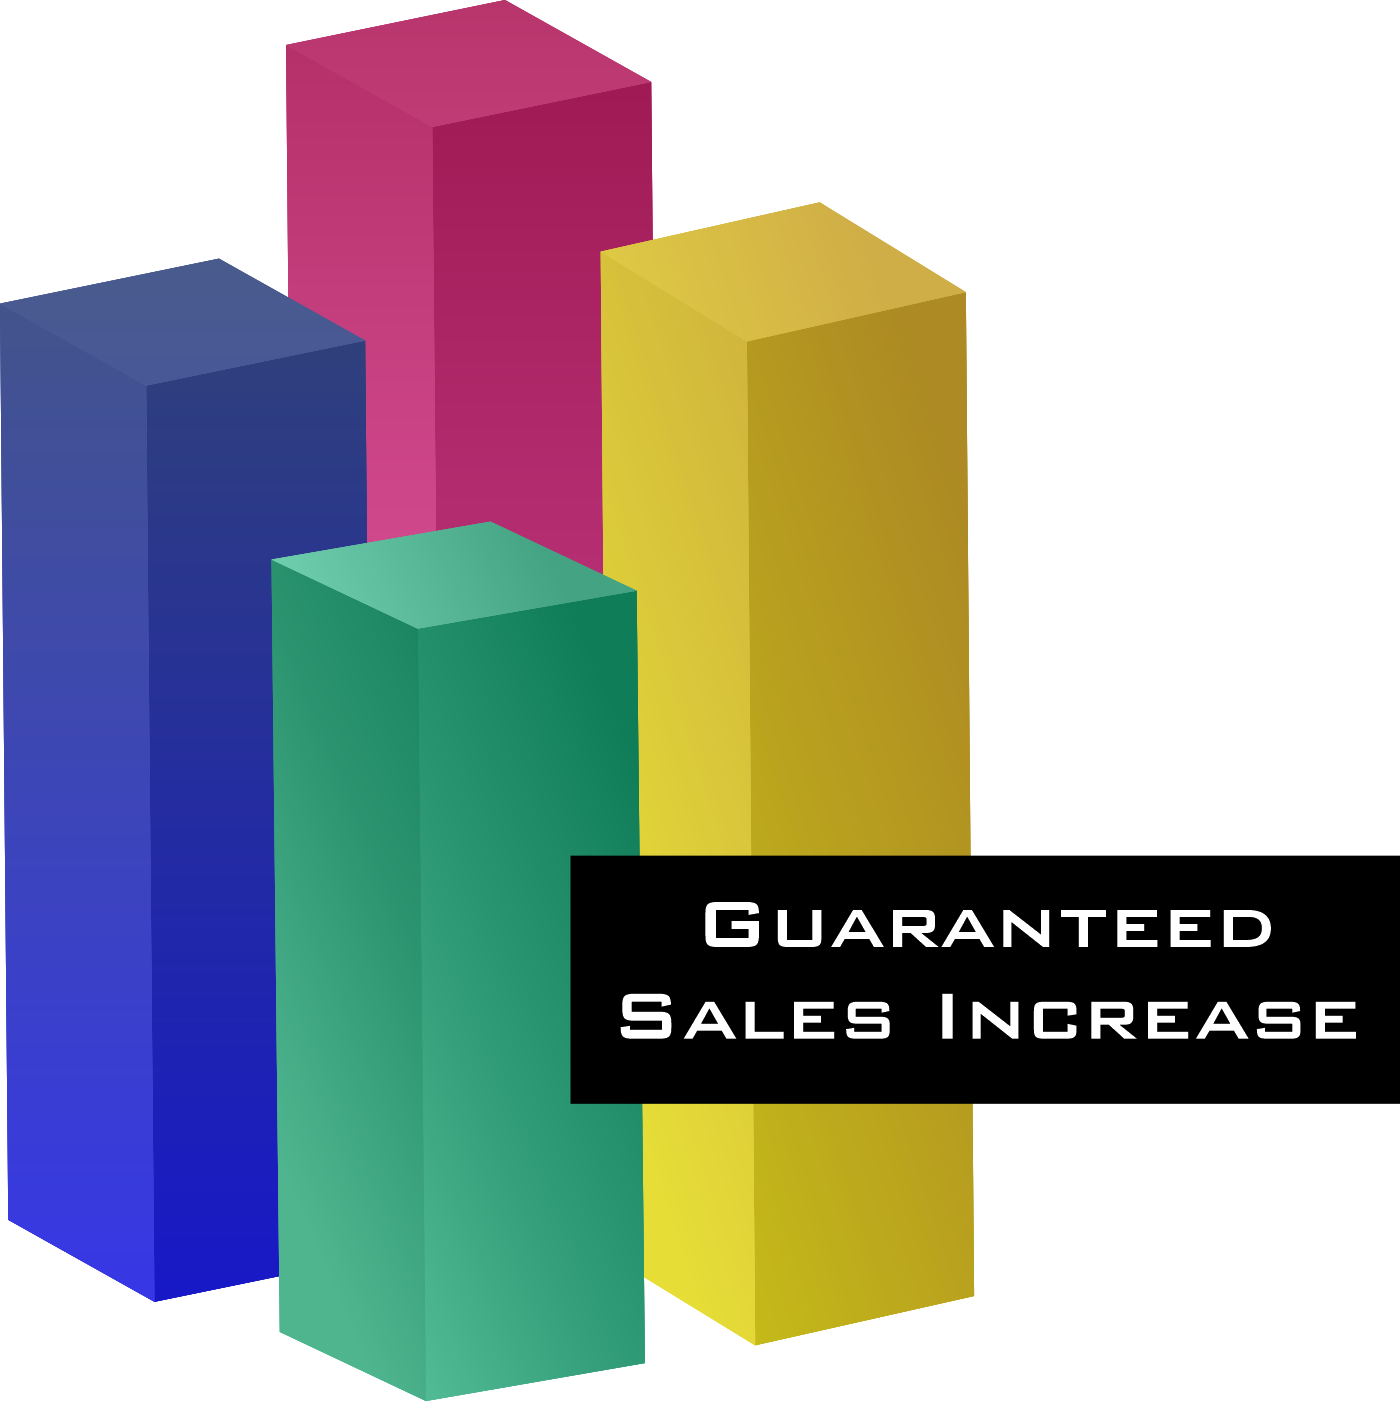 Guaranteed sales increase